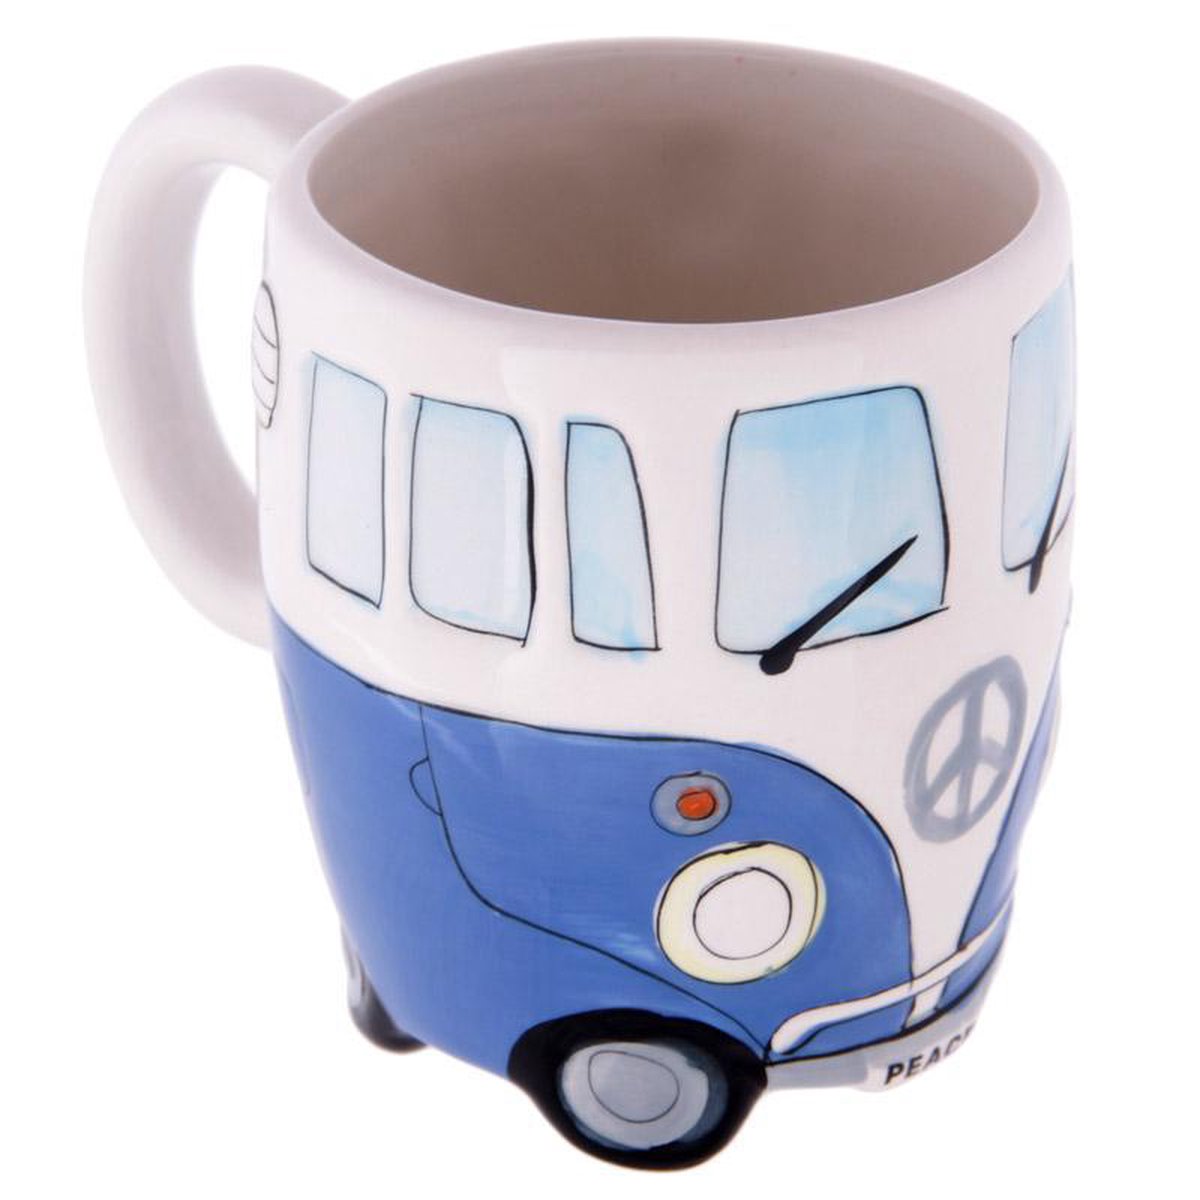 Volkswagen kampeerbus camper mok beker koffiemok kleur blauw vakantie camping